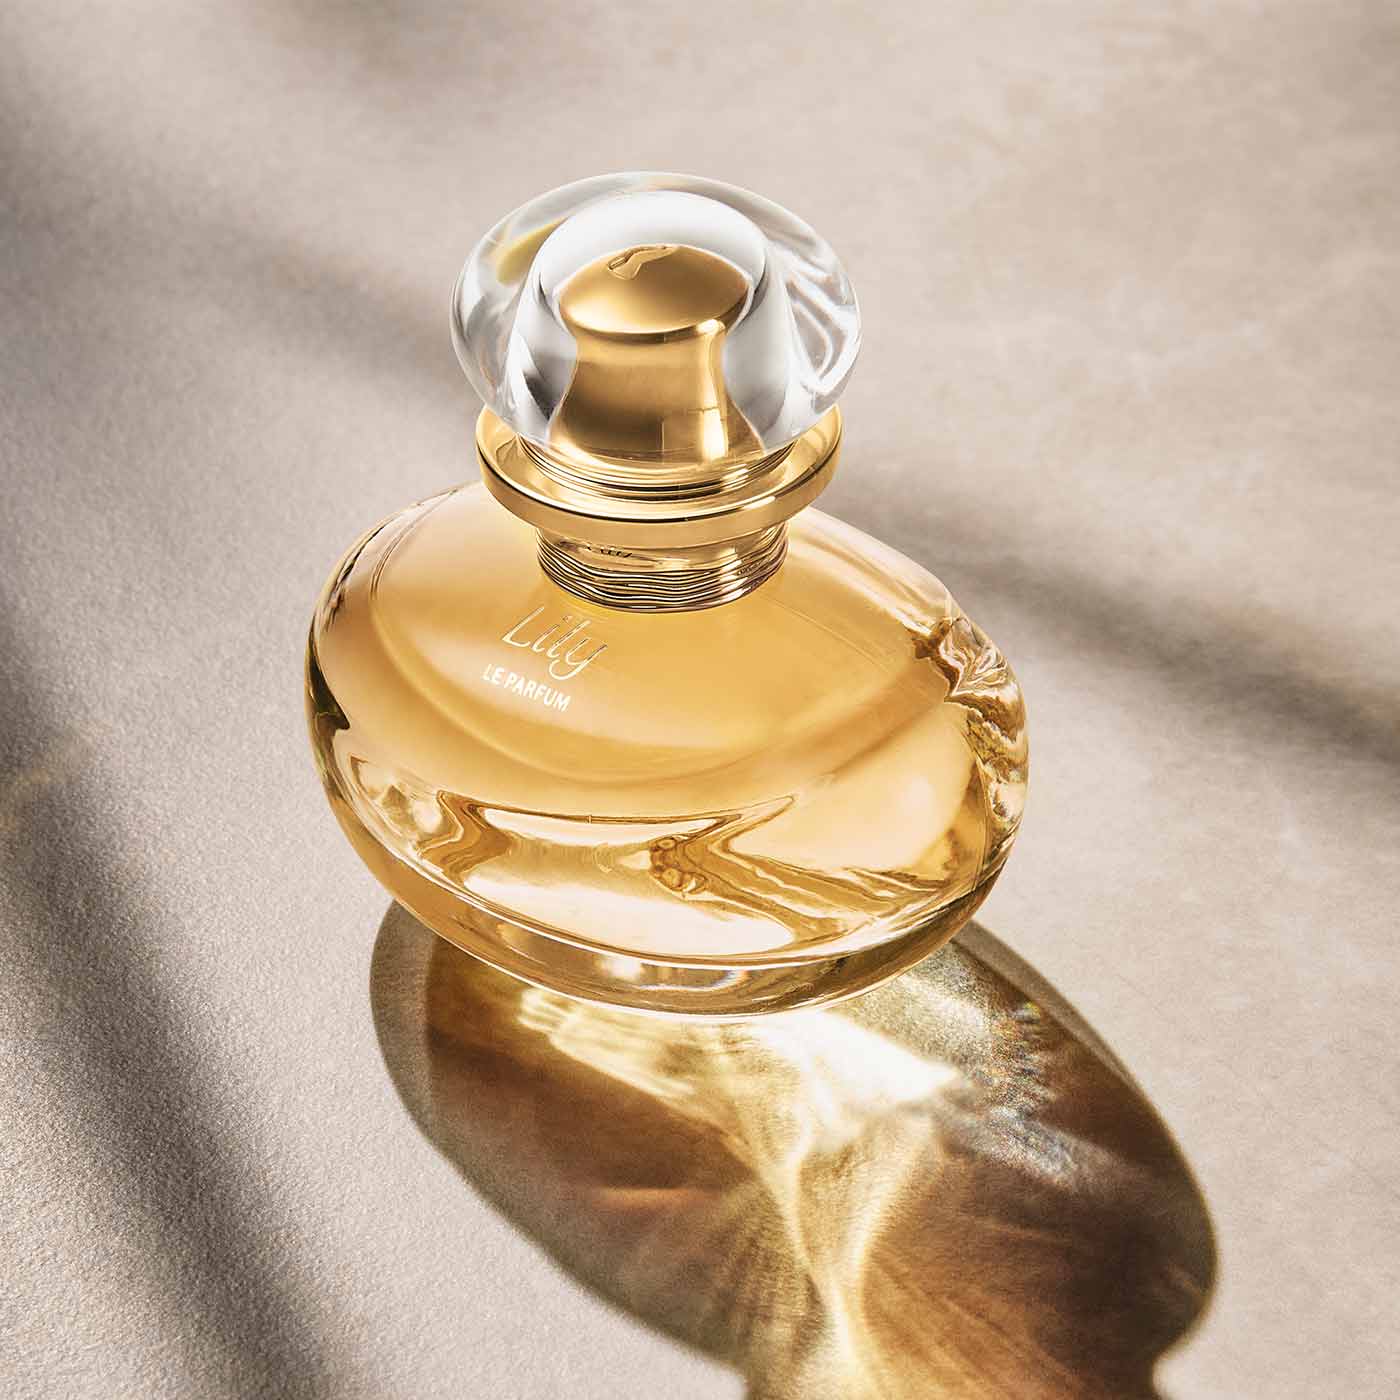 Este é um frasco do perfume Lily Le Parfum da marca Boticário. A embalagem é em vidro transparente, com um líquido amarelo claro dentro e uma tampa dourada. O rótulo tem o nome do perfume em letras elegantes e a marca O Boticário em destaque.